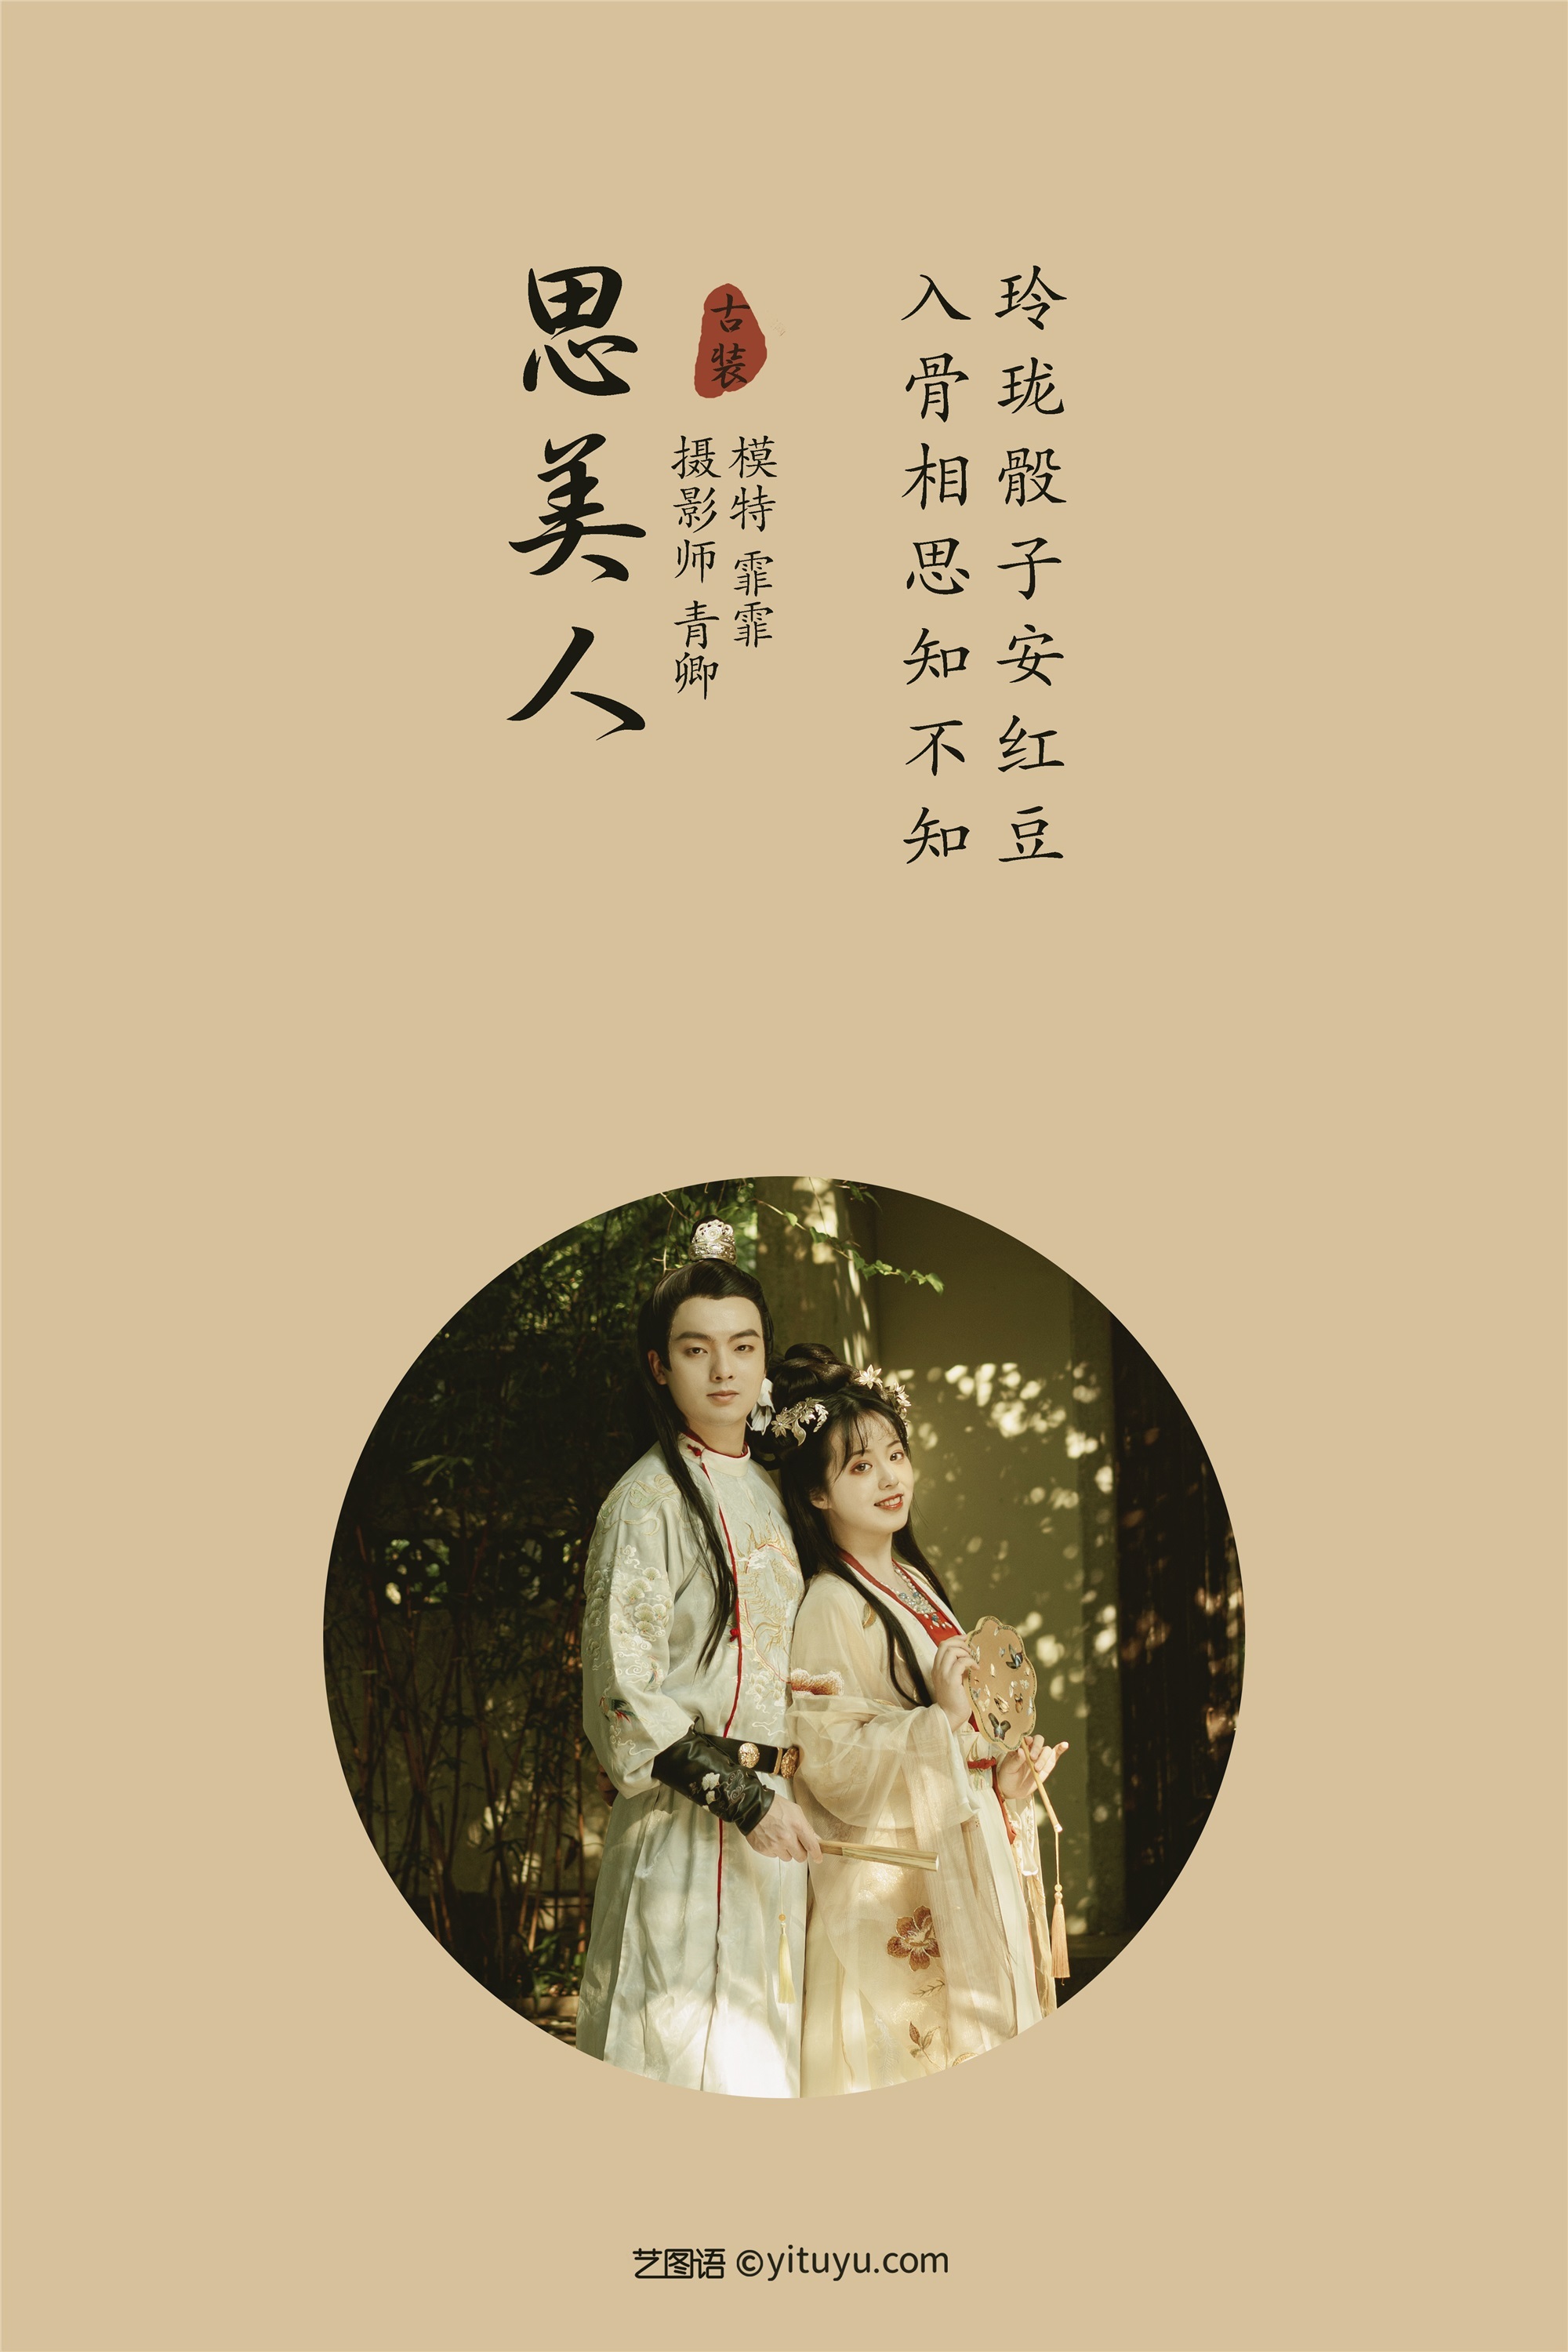 YITUYU Art Picture Language 2021.09.06 Si Mei Ren Fei Fei